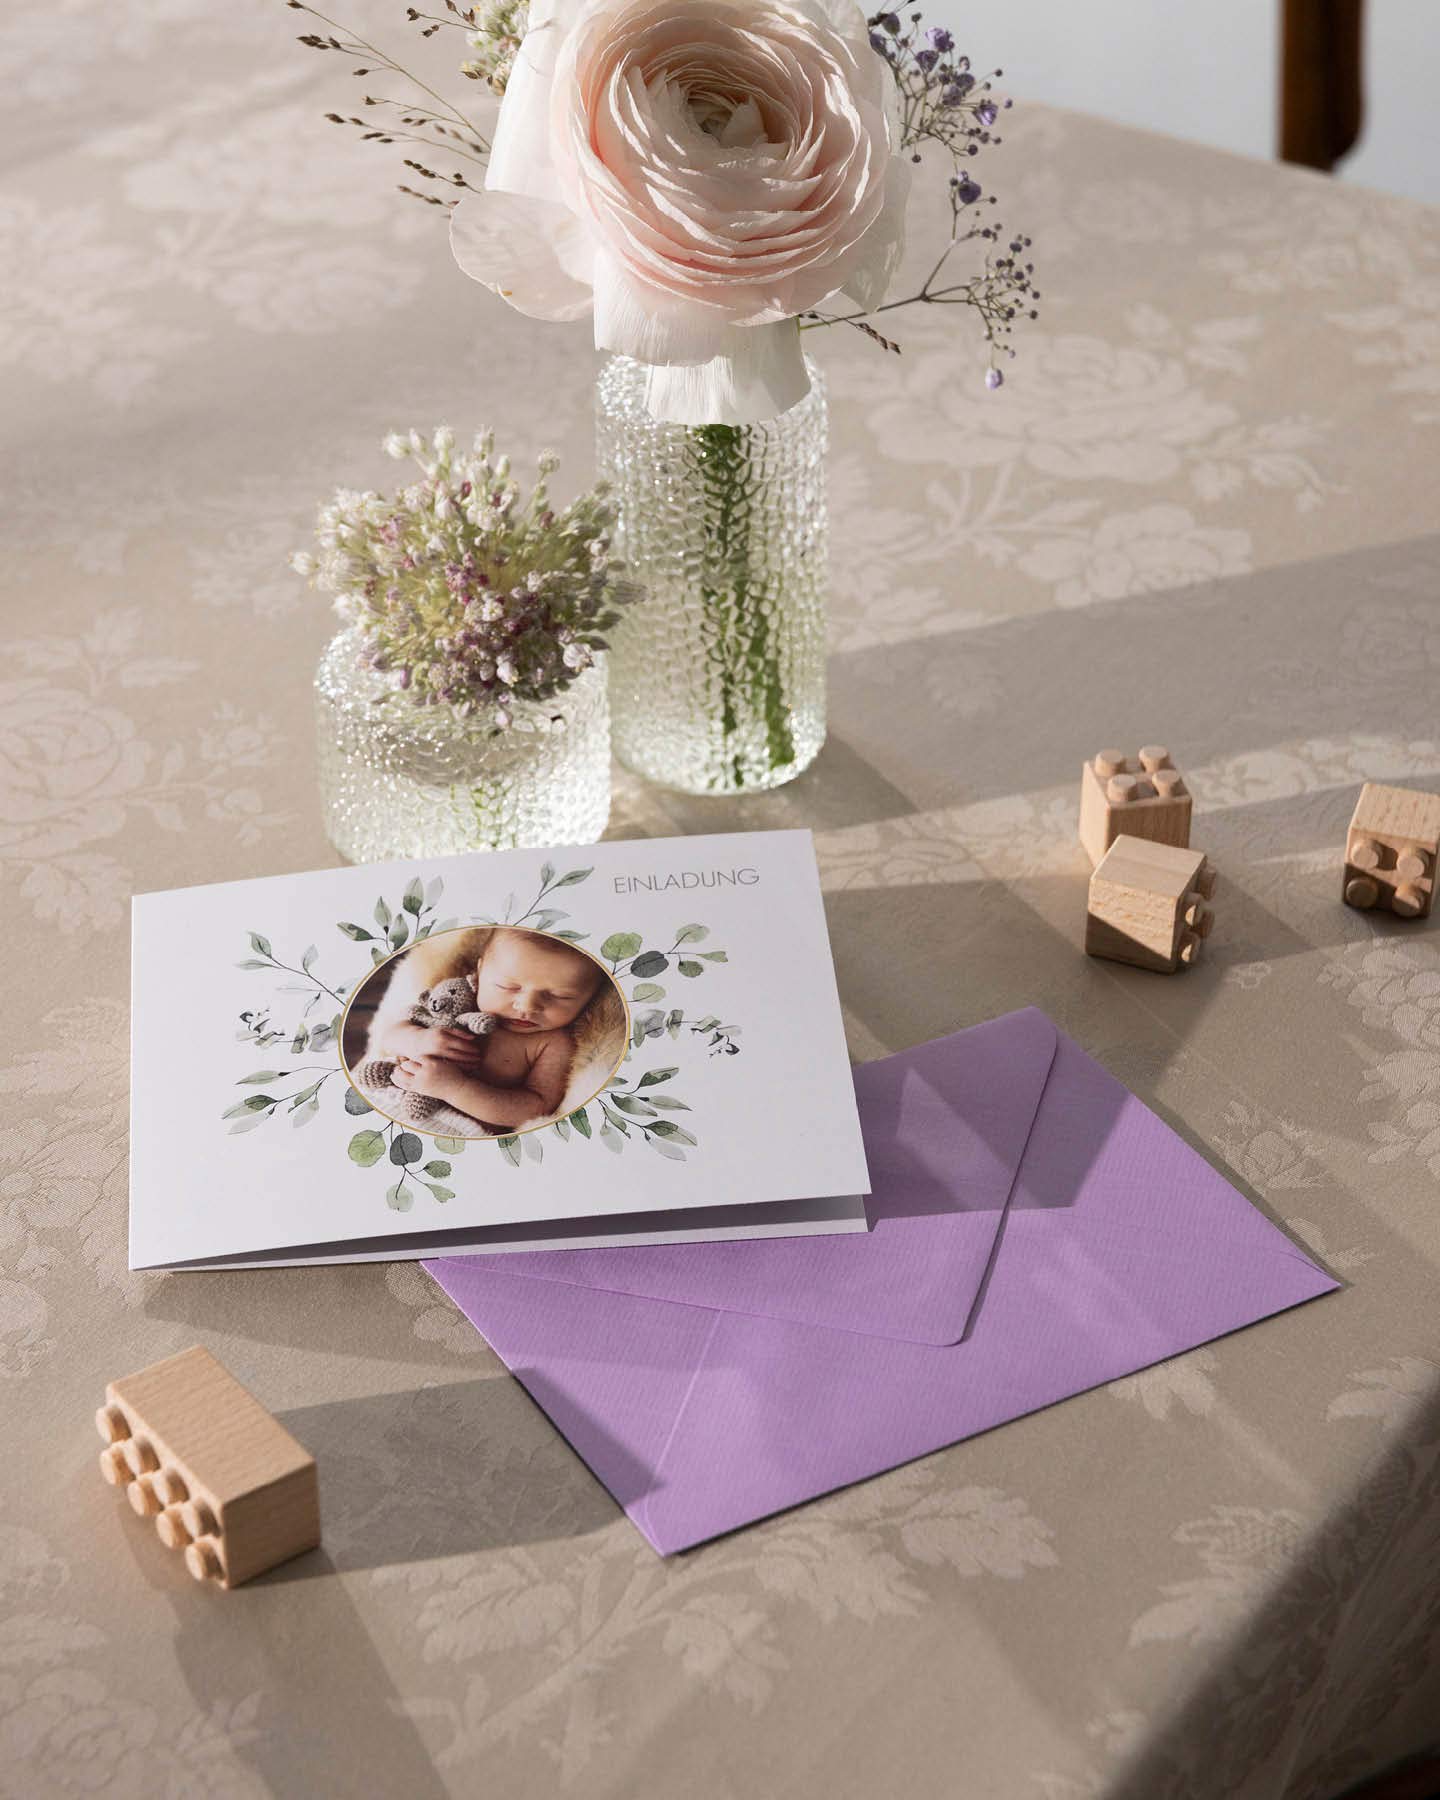 Einladungskarte zur NAmensgebungsfeier mit Umschlag auf einem Tisch mit  zwei Glasvasen und Holzspielzeug